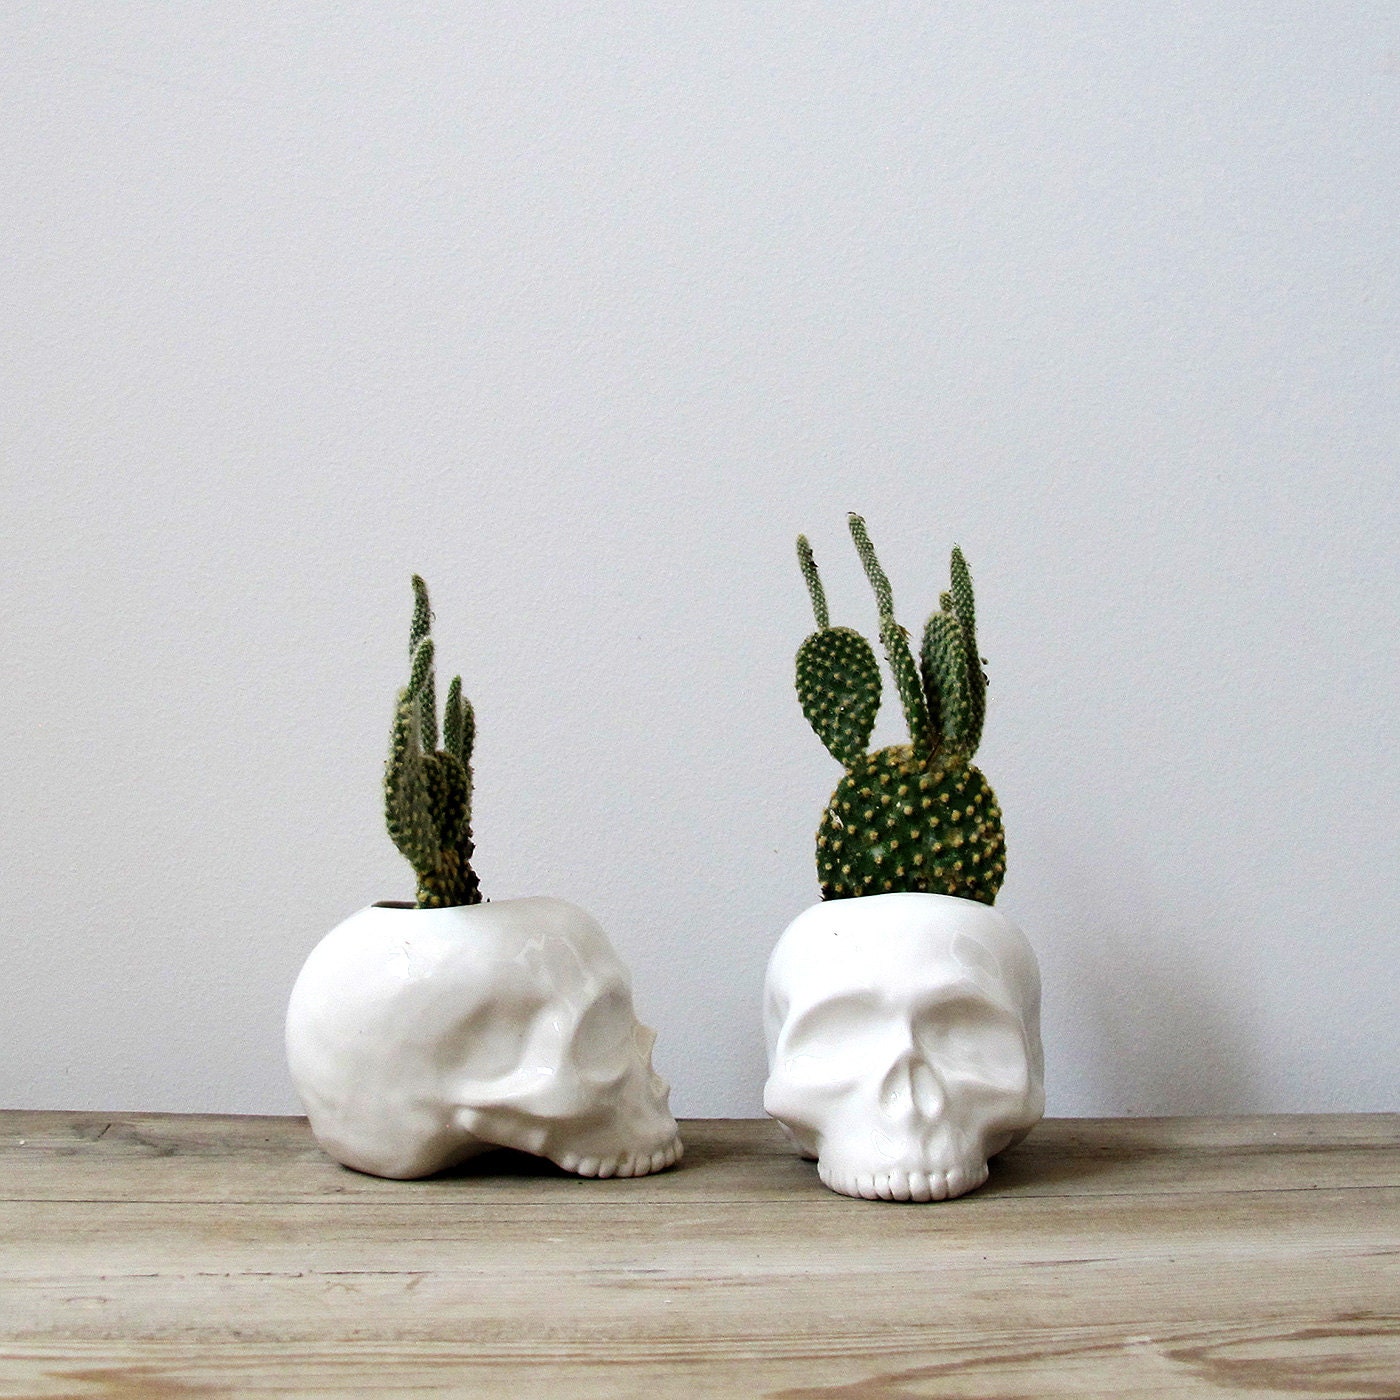 Ceramic Skull Planter - perfect for cactus succulent or air plant - mudpuppy